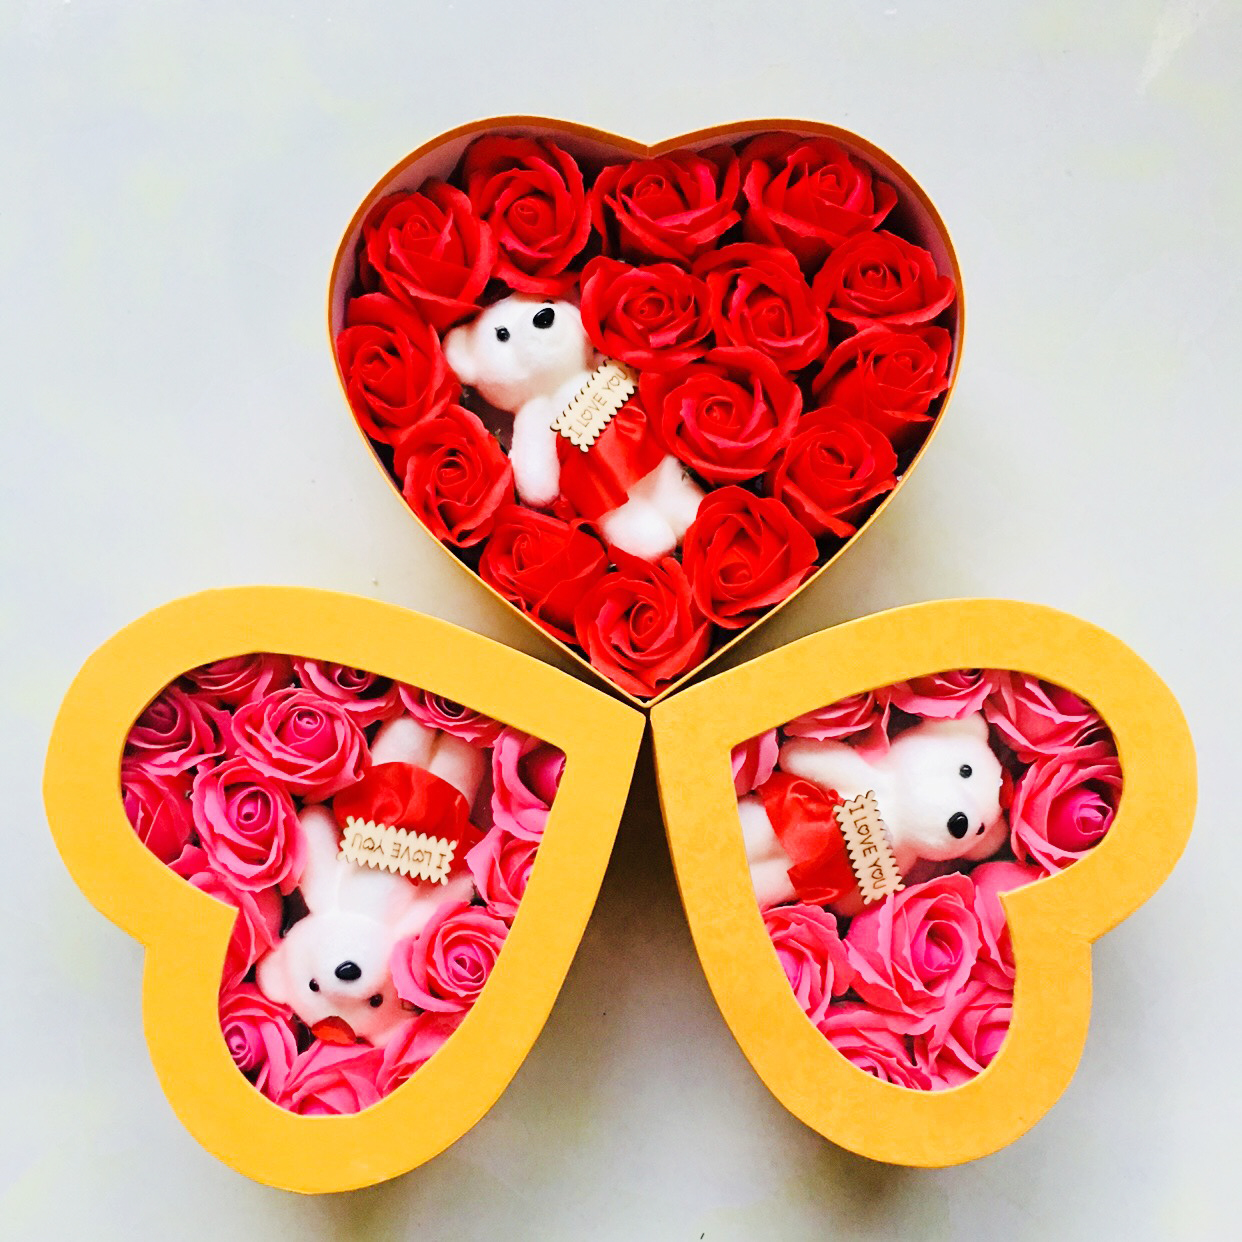 Quà tặng valentine hộp hoa hồng sáp hình trái tim, kèm gấu siêu đẹp đủ màu sắc, kích thước, món quà sinh nhật